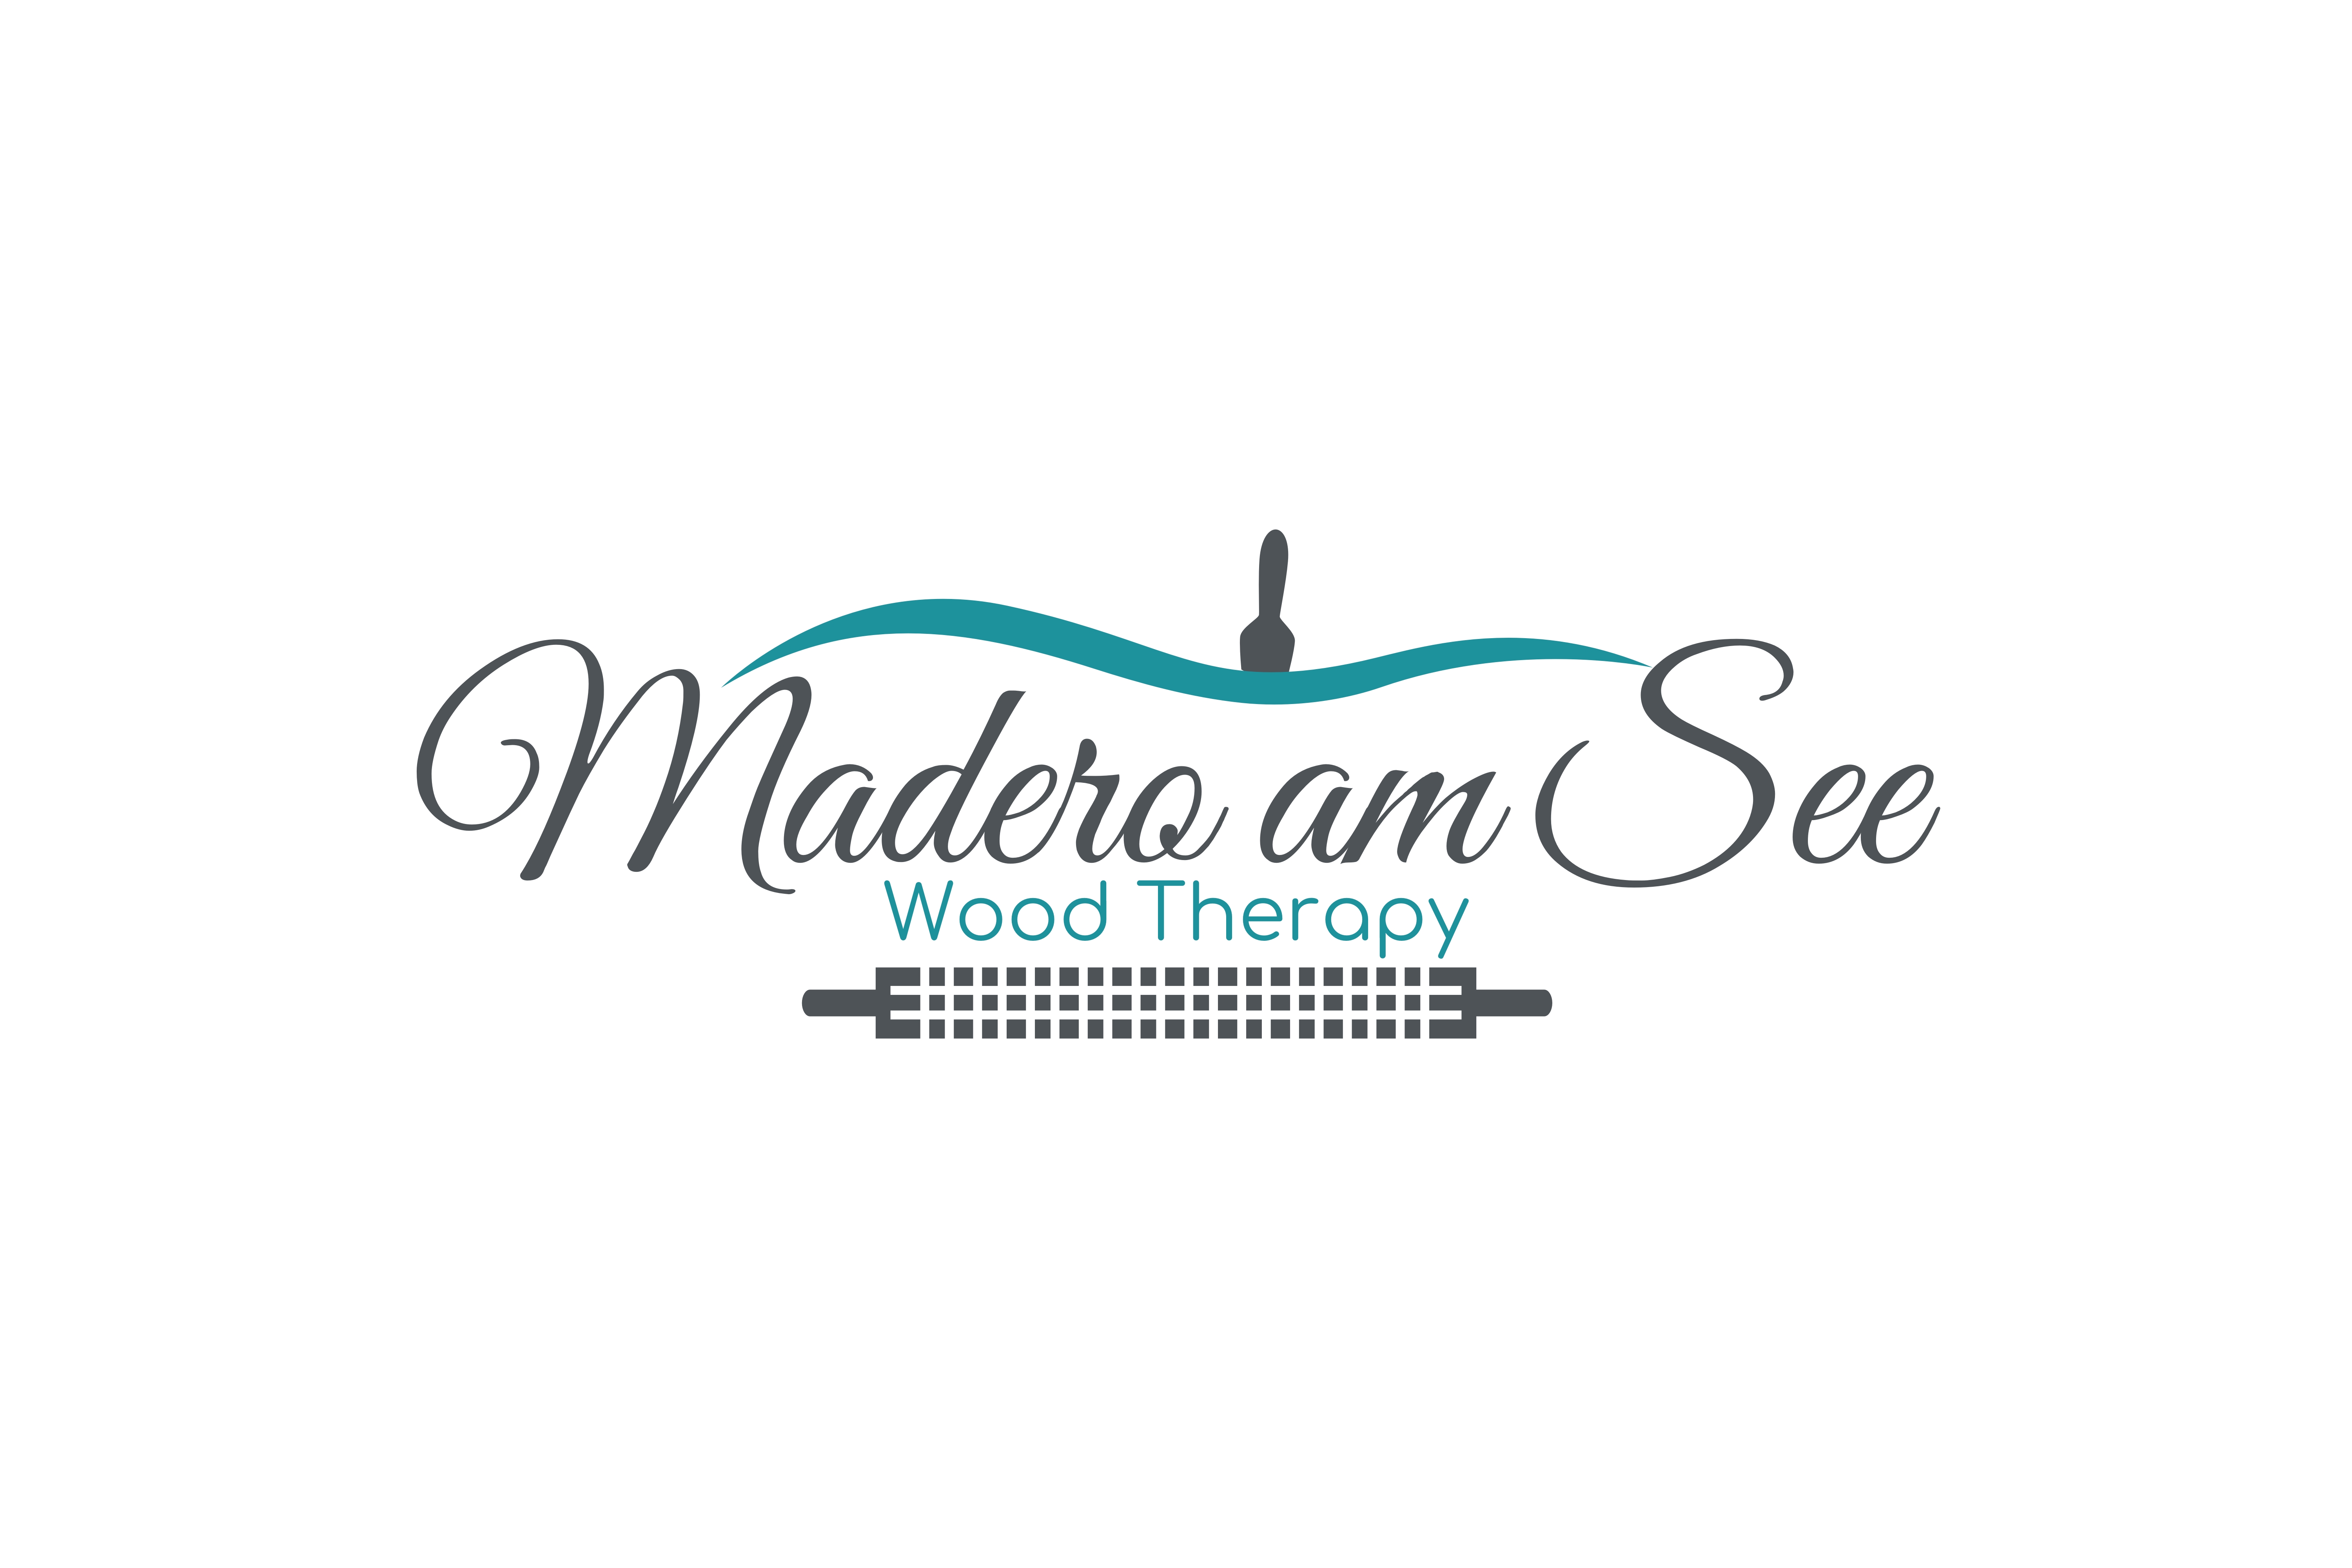 Madero am See